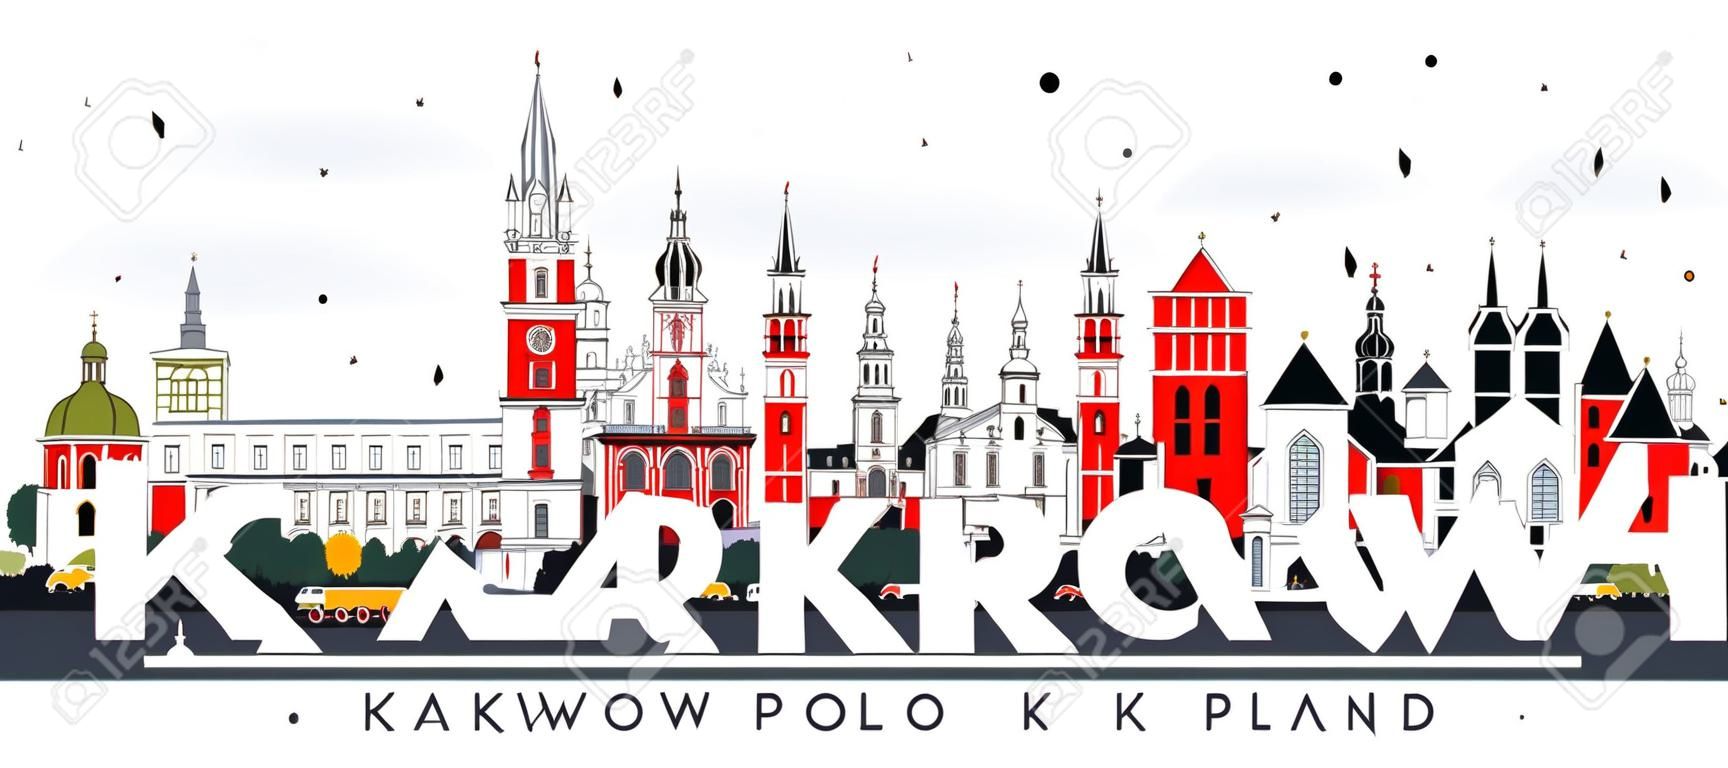 Krakau Polen City Skyline met kleur gebouwen geïsoleerd op wit. Vector Illustratie. Zakenreizen en toerisme Concept met historische architectuur. Krakau Cityscape met landmarks.